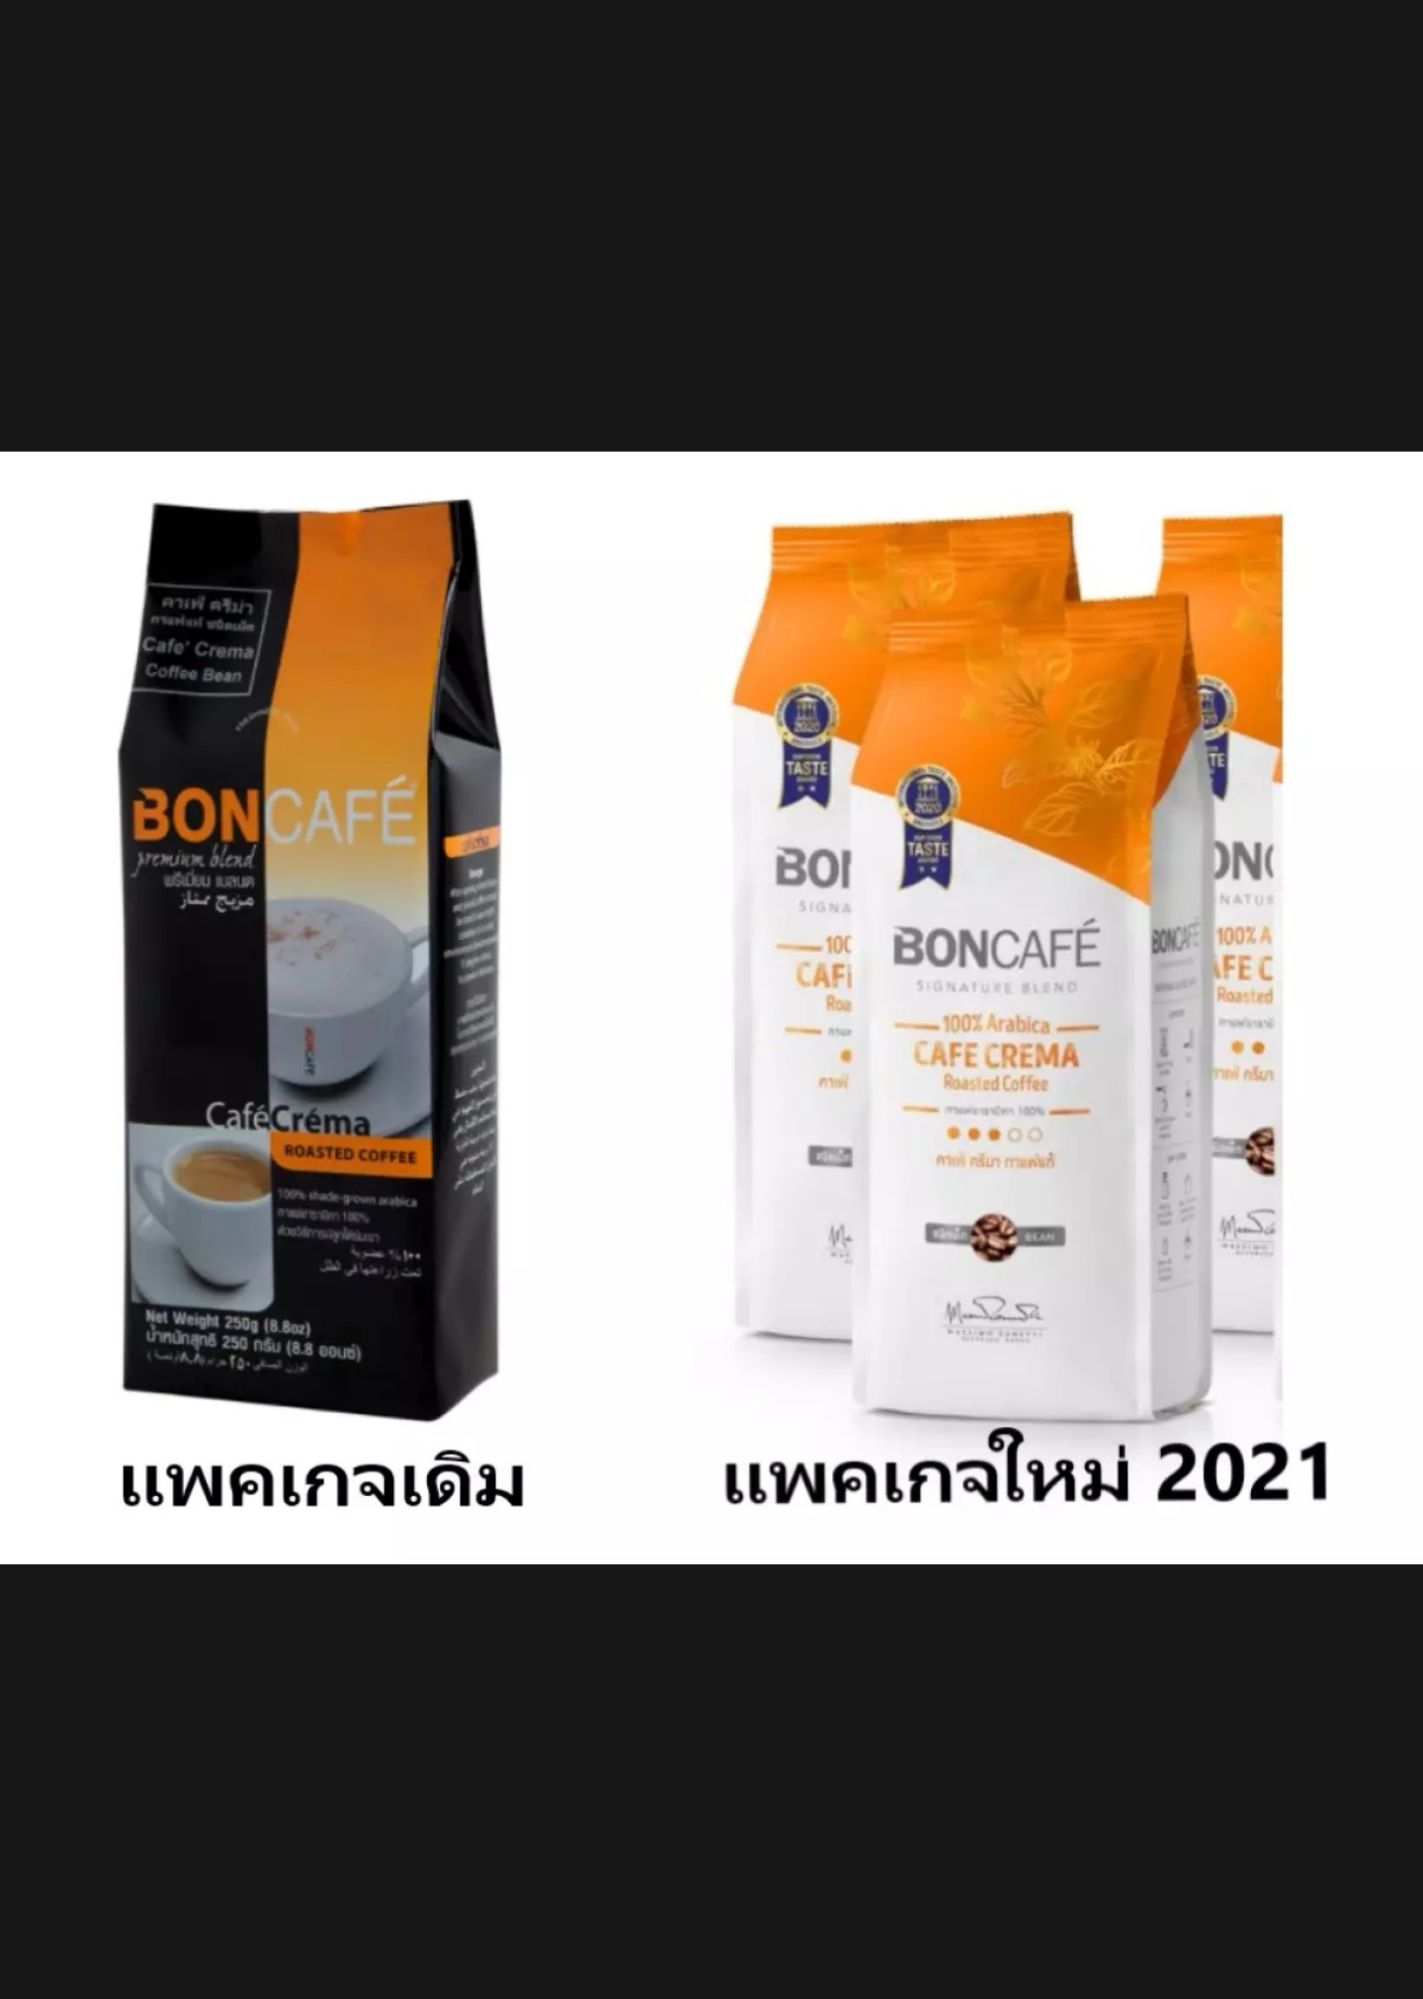 บอน คาเฟ่ ครีม่า (boncafe crema) กาแฟอราบิก้า 100 % แบบเมล็ด ยังไม่บด ขนาด 250 กรัม EXP. 07/2022